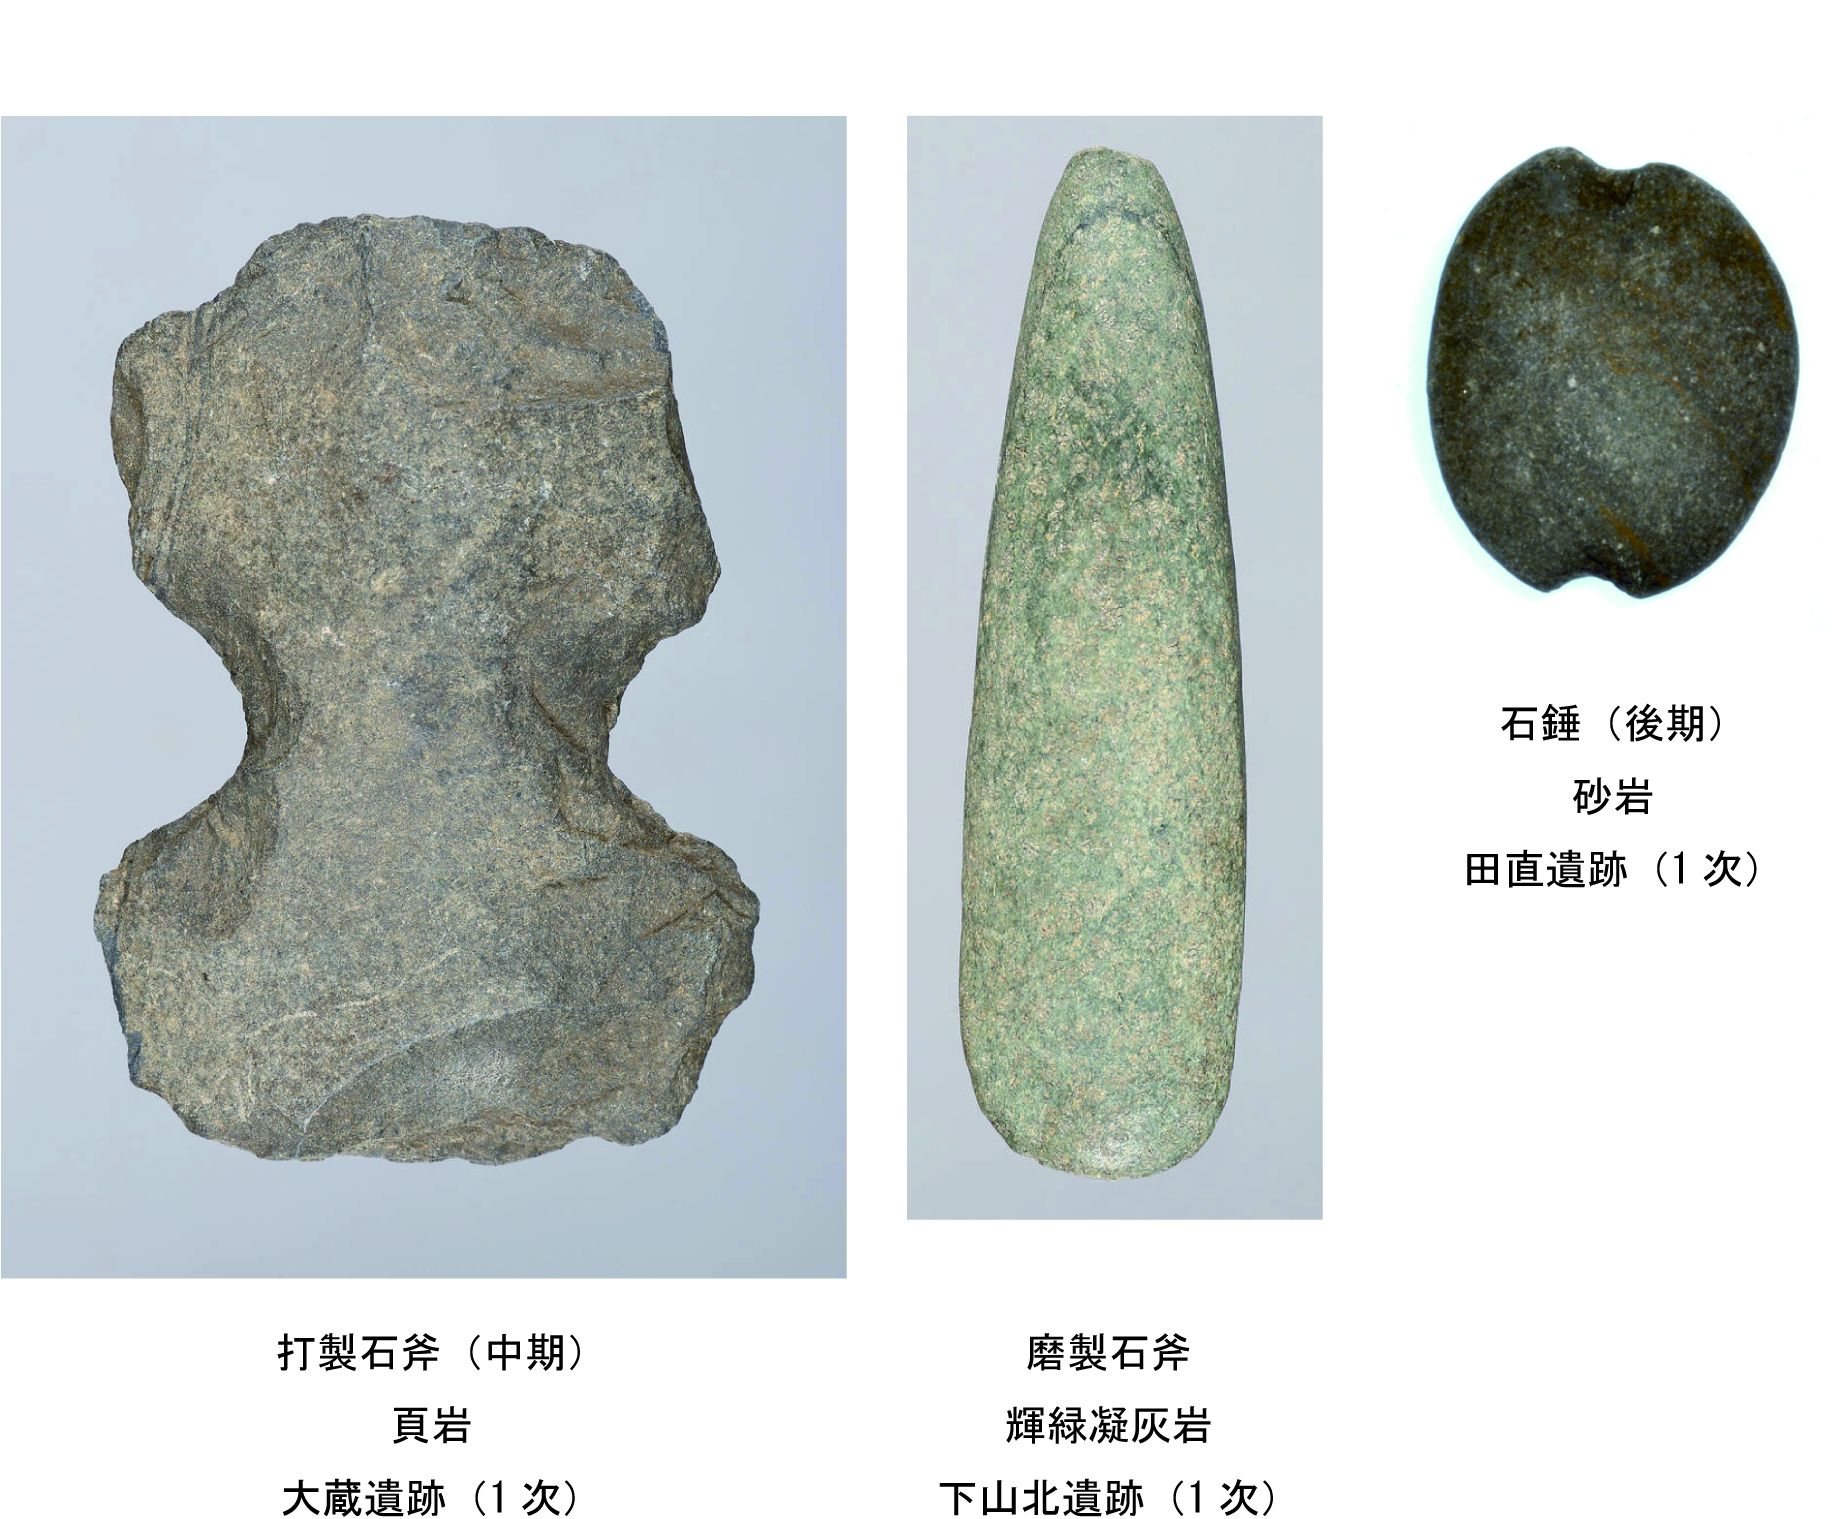 縄文時代 磨製石器 『石斧』 … 詳細不明 - 工芸品